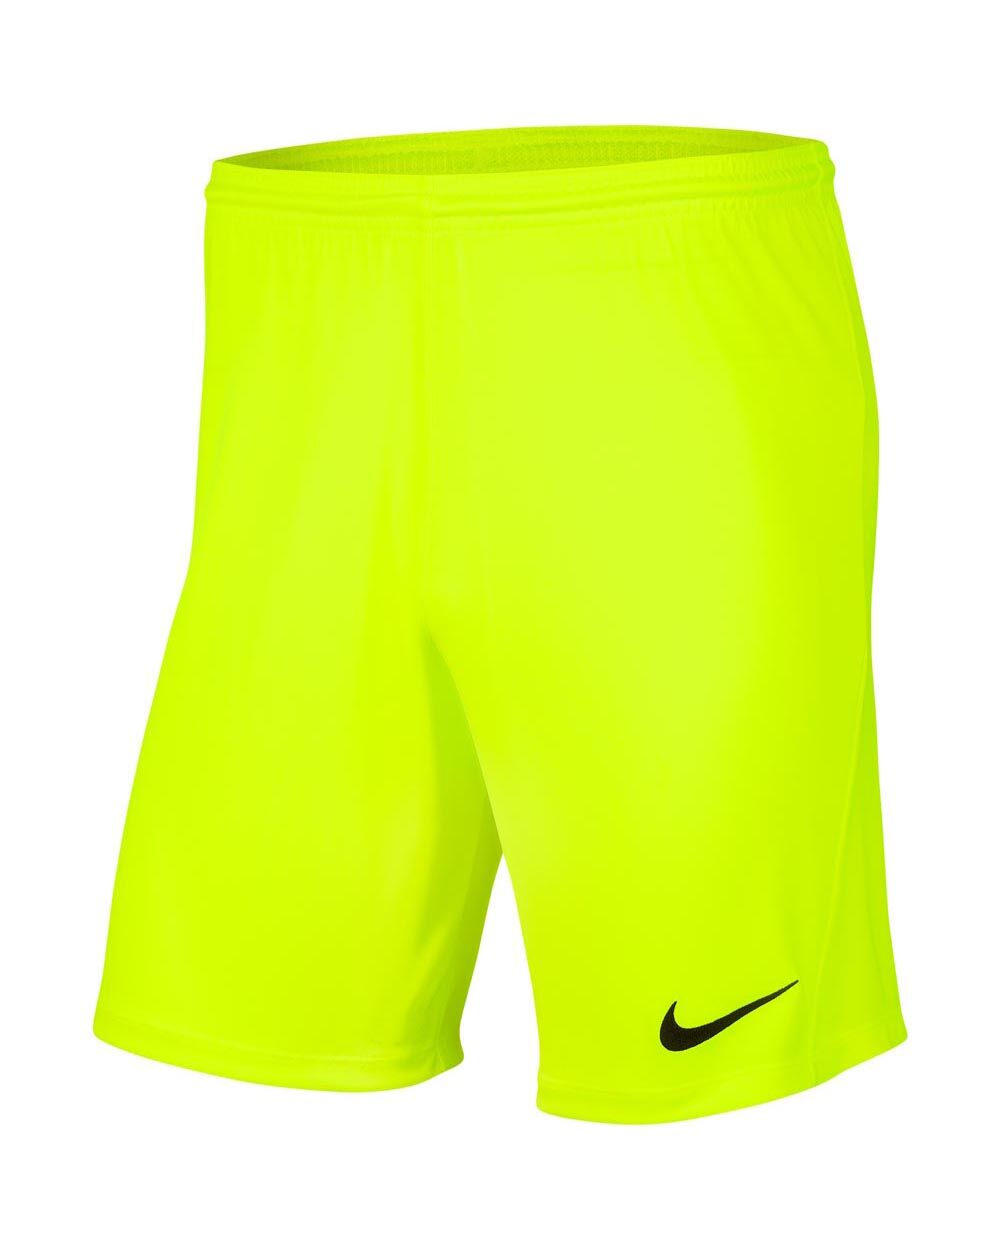 Pantalón corto Nike Park III Amarillo Fluorescente Hombre - BV6855-702